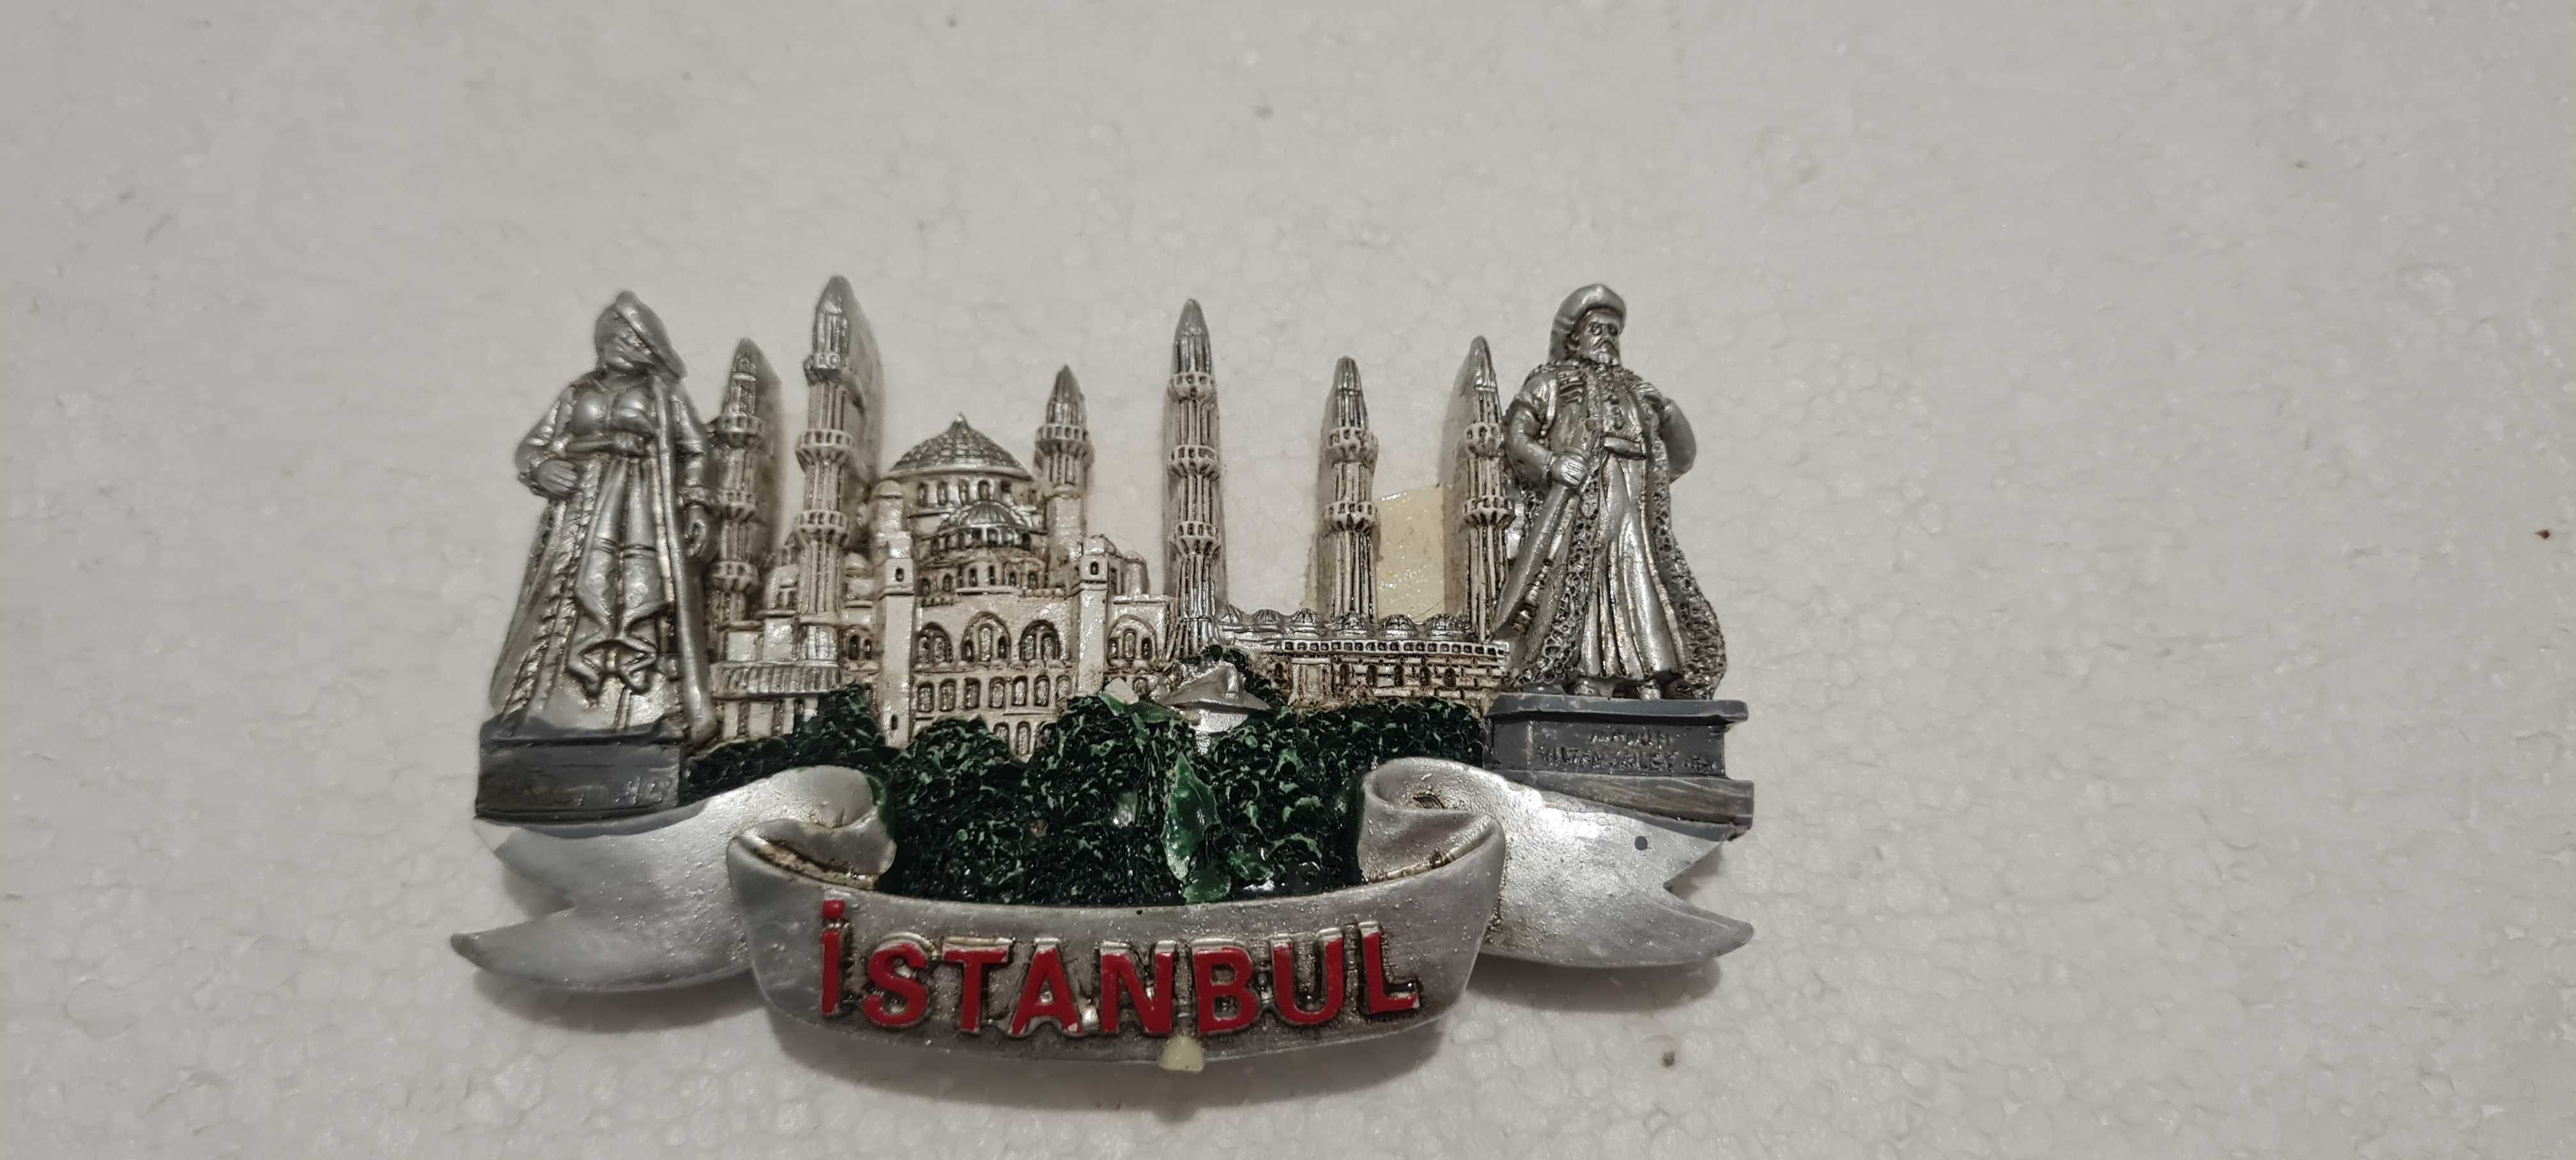 Magnes Istambuł Istambul gipsowy DUŻY NOWY